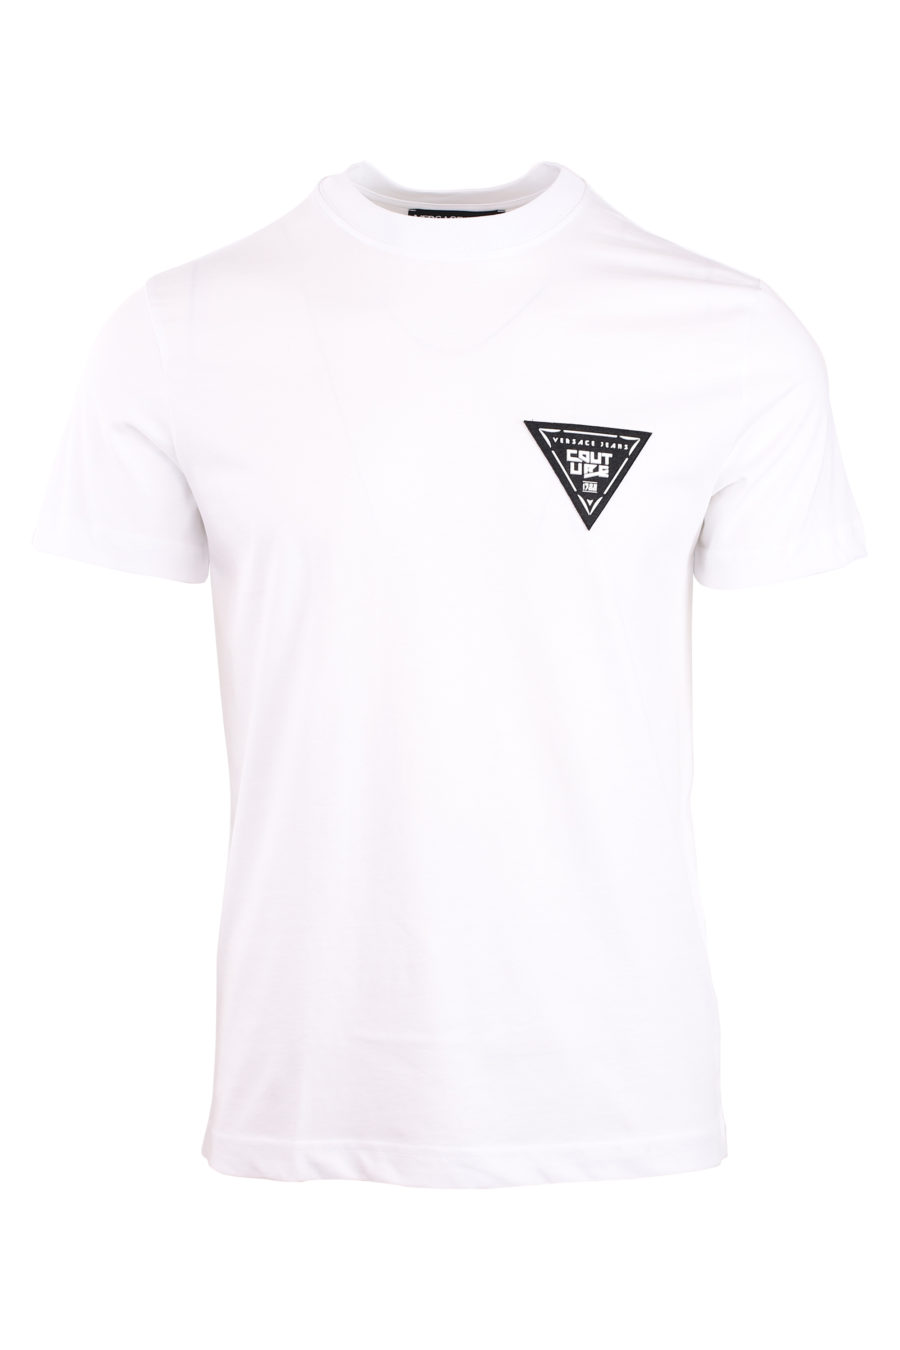 Camiseta blanca con logo en triangulo pequeño - IMG 0753